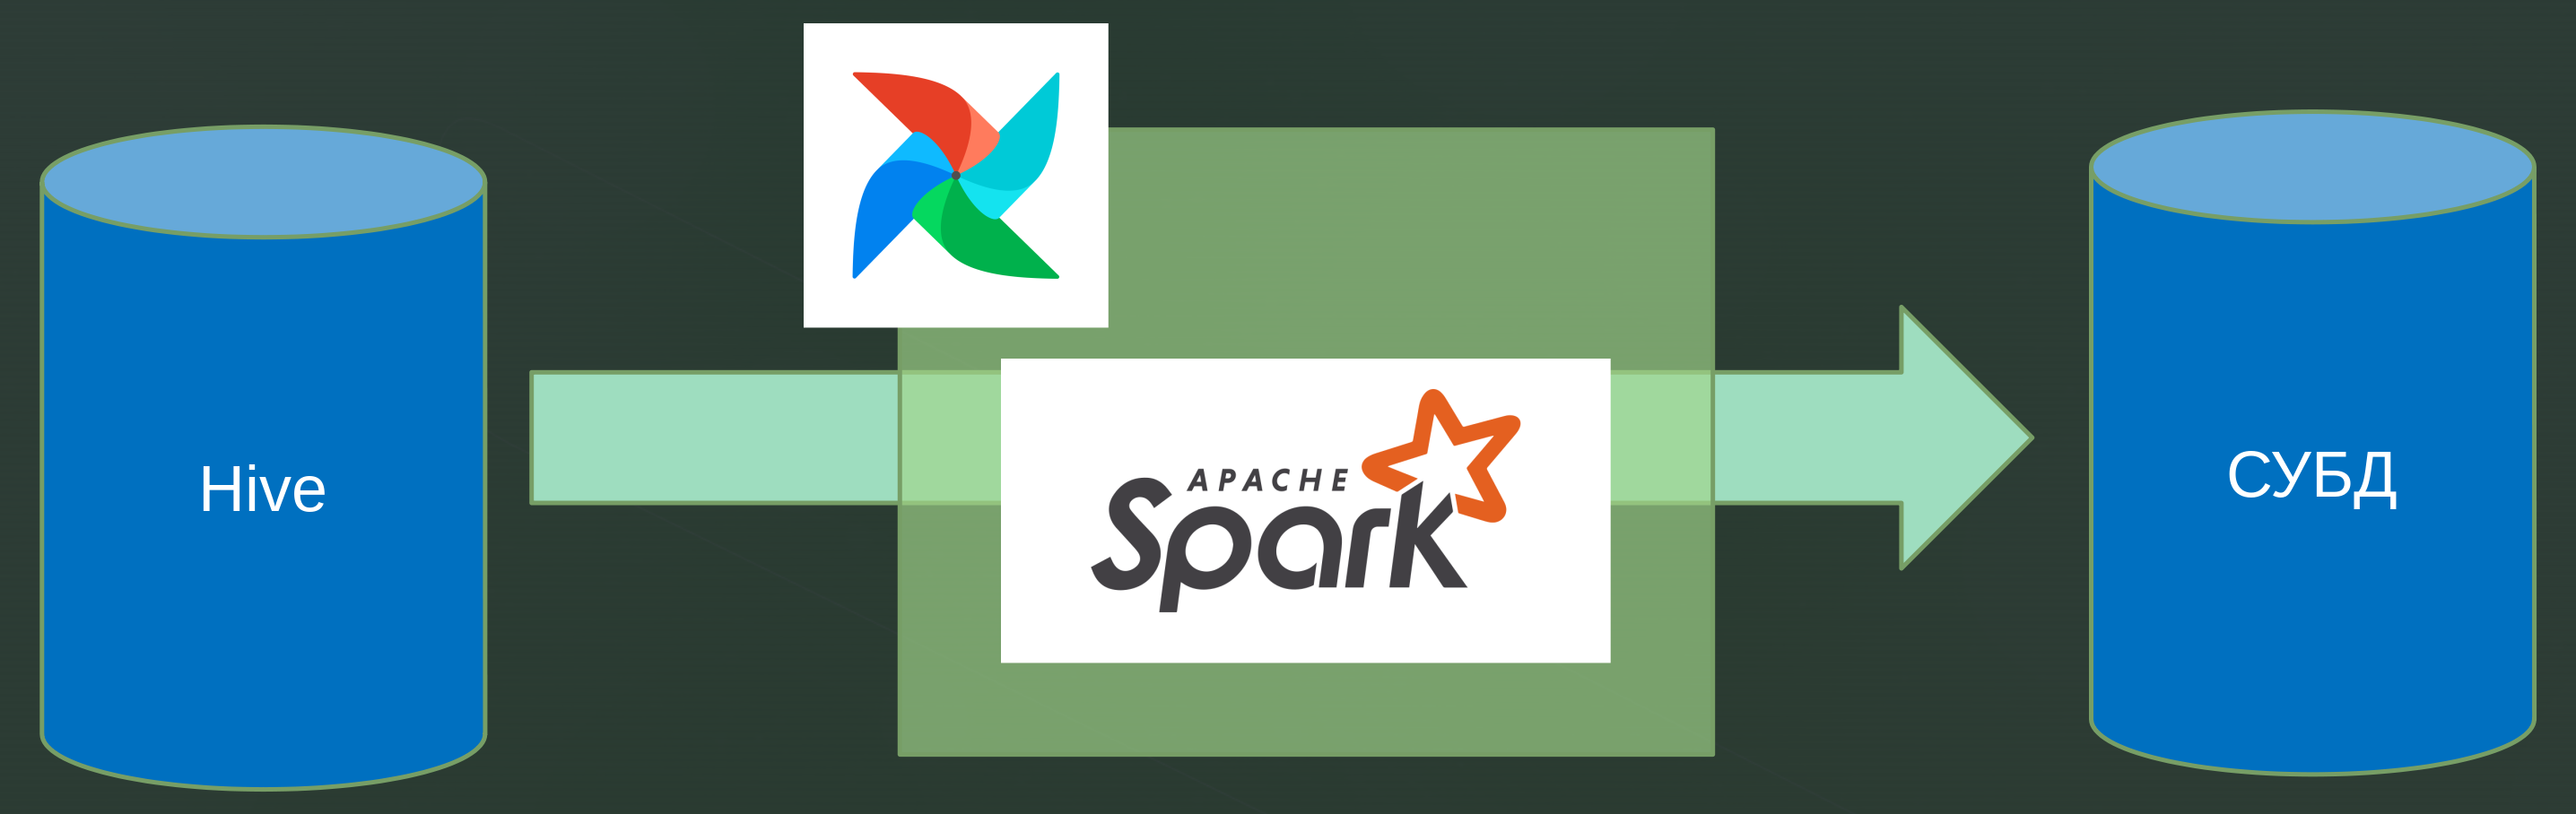 Типичный процесс обработки данных в Hadoop с использованием Spark